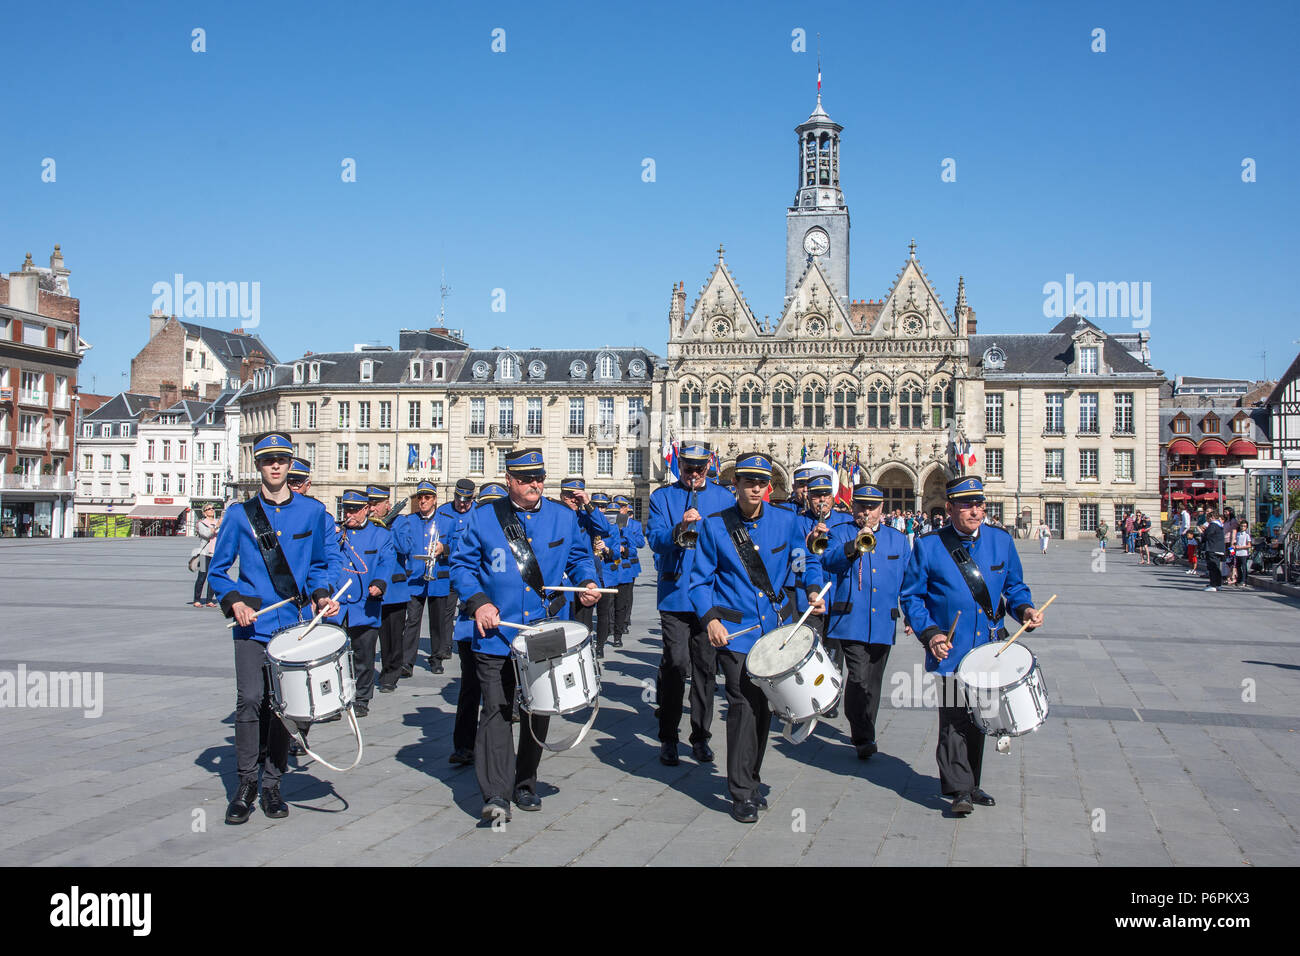 La banda de tamborileros y llevar la victoria en Europa el 8 de mayo desfile en la Place de l'Hotel de Ville ijnSta Quentin, Aisne, Francia el 8 de mayo de 2918 Foto de stock